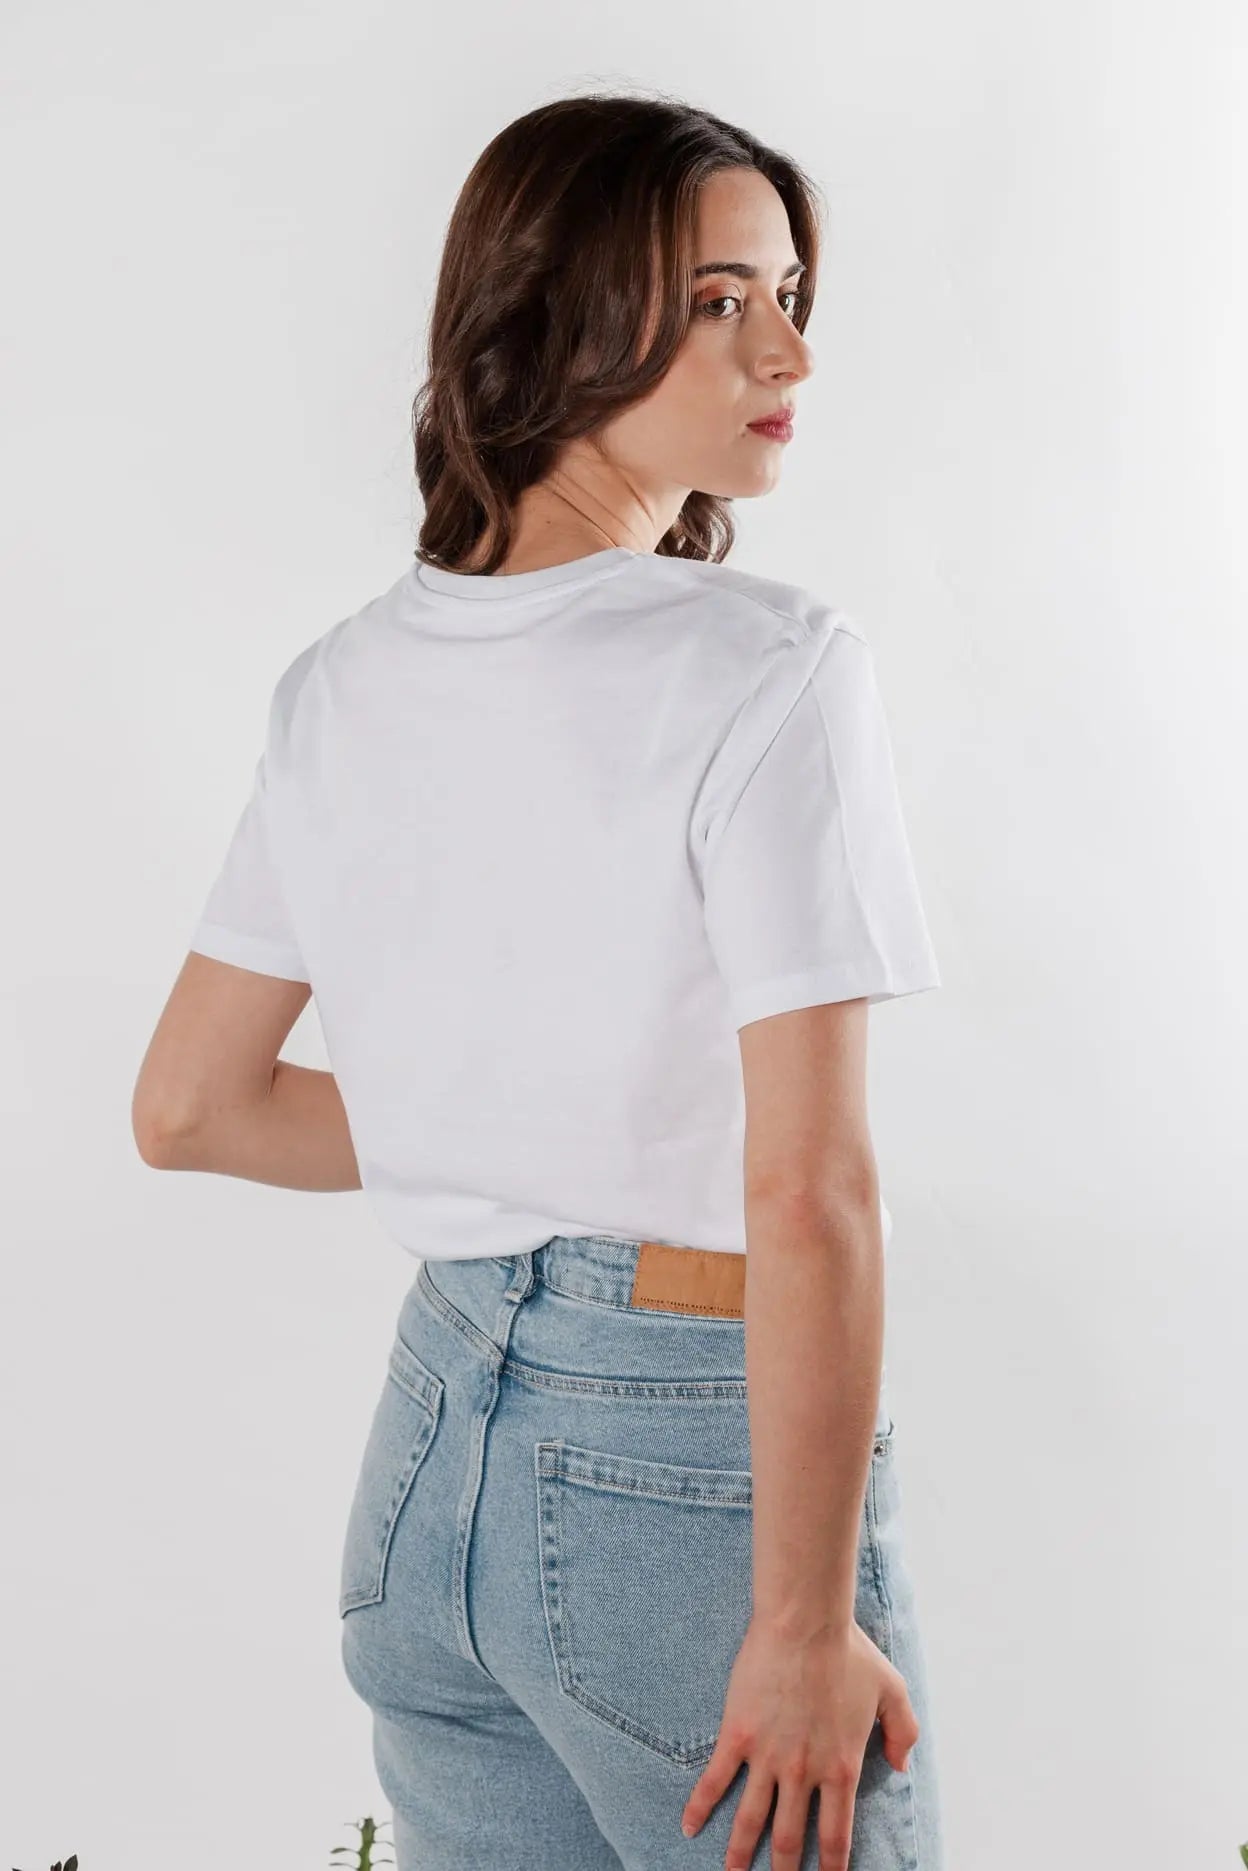 camiseta blanca 100% algodon ecologico. Regalo para mujer. Estampados esencia Japón